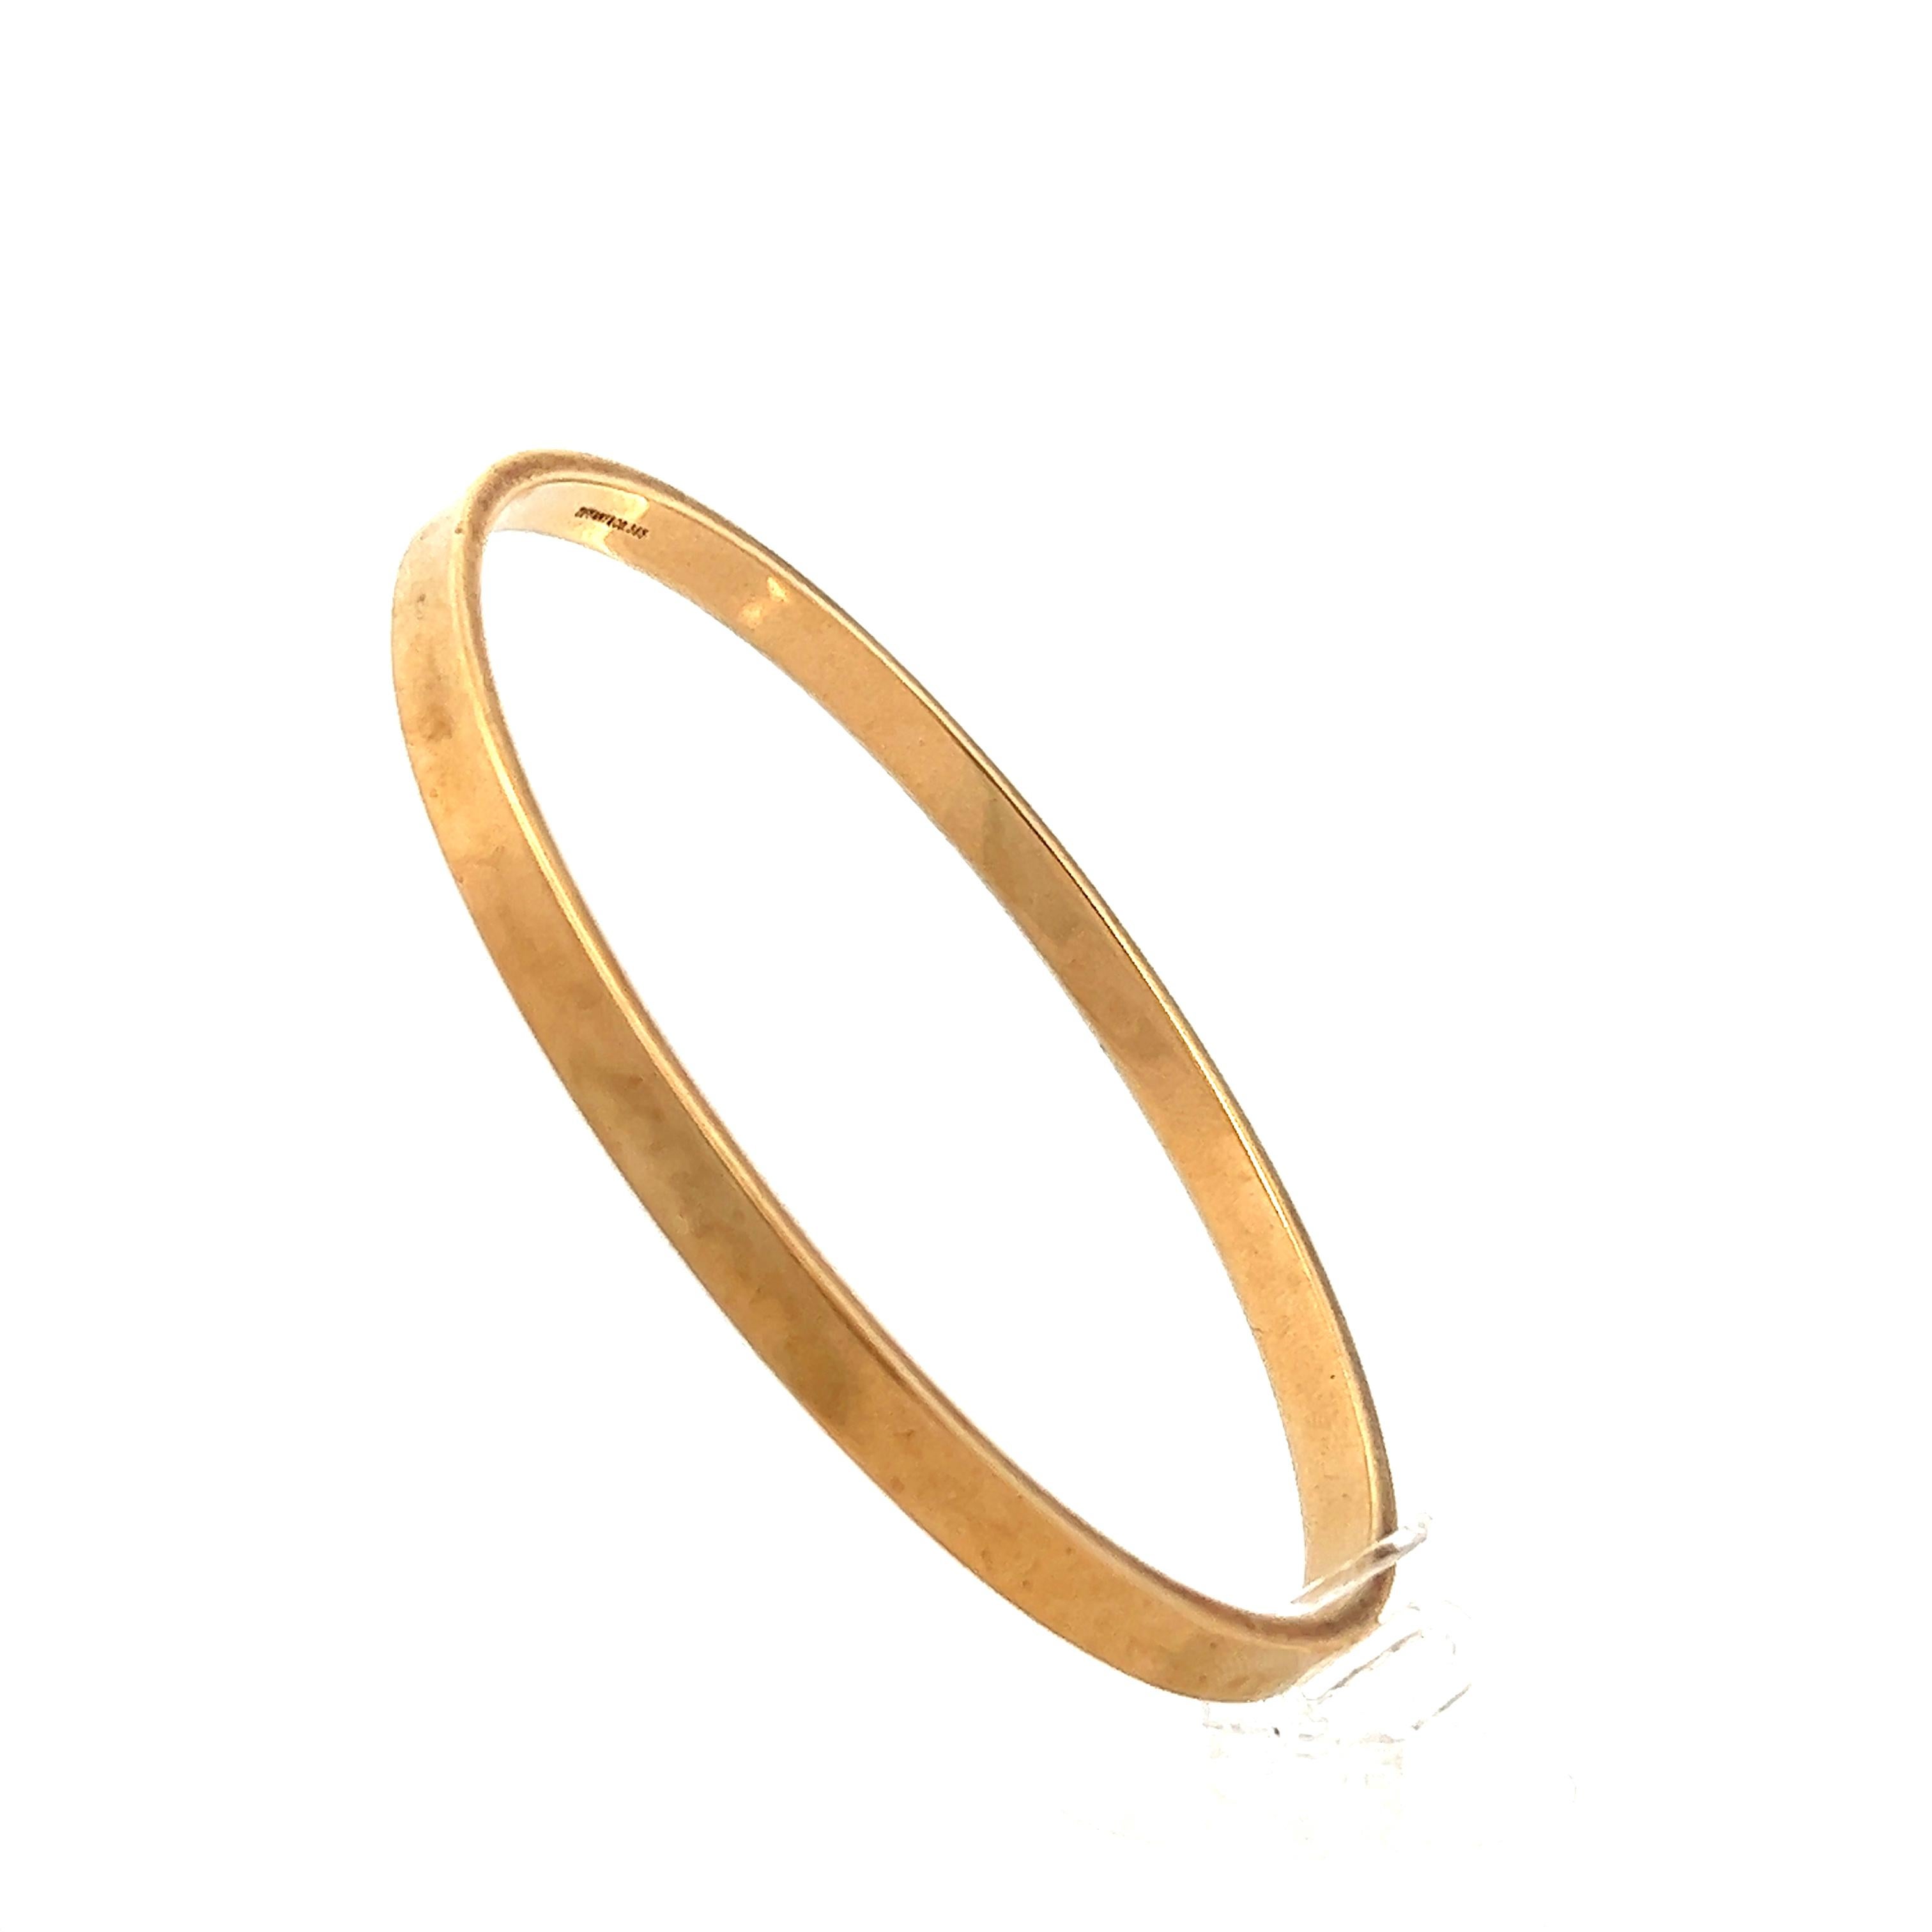 Ce bracelet vintage de Tiffany & Co. en or jaune 14 carats est réalisé en or jaune poli 14 carats magnifiquement détaillé. Le bracelet présente un design traditionnel à enfiler et ne comporte ni fermoir ni verrou. L'intérieur du bracelet est marqué